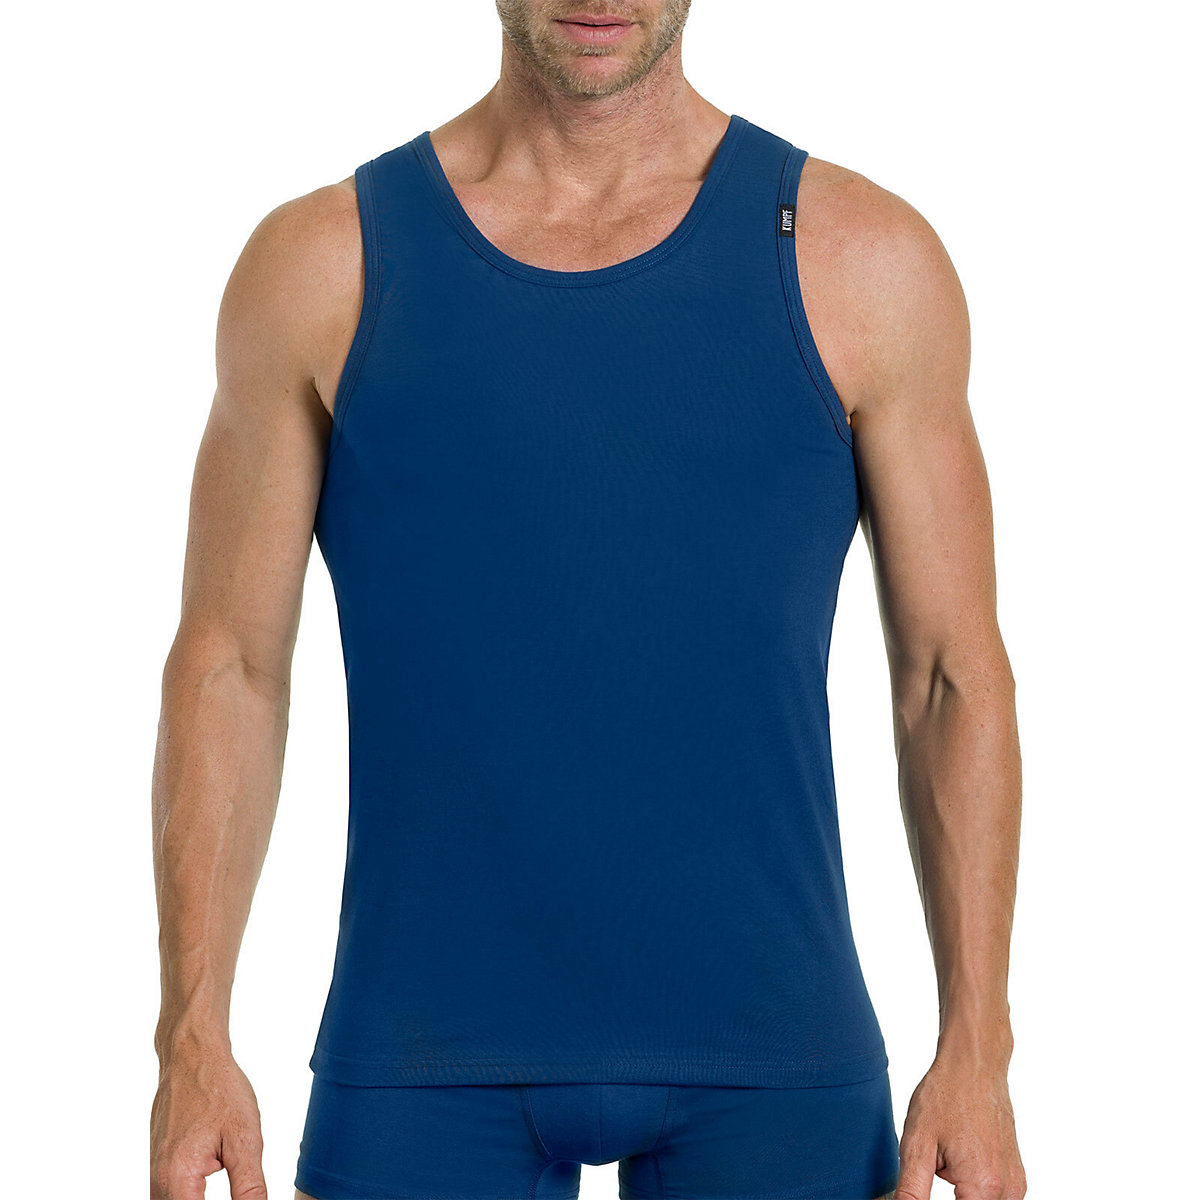 Kumpf Body Fashion 4er Sparpack Herren Unterhemd Bio Cotton Unterhemden dunkelblau